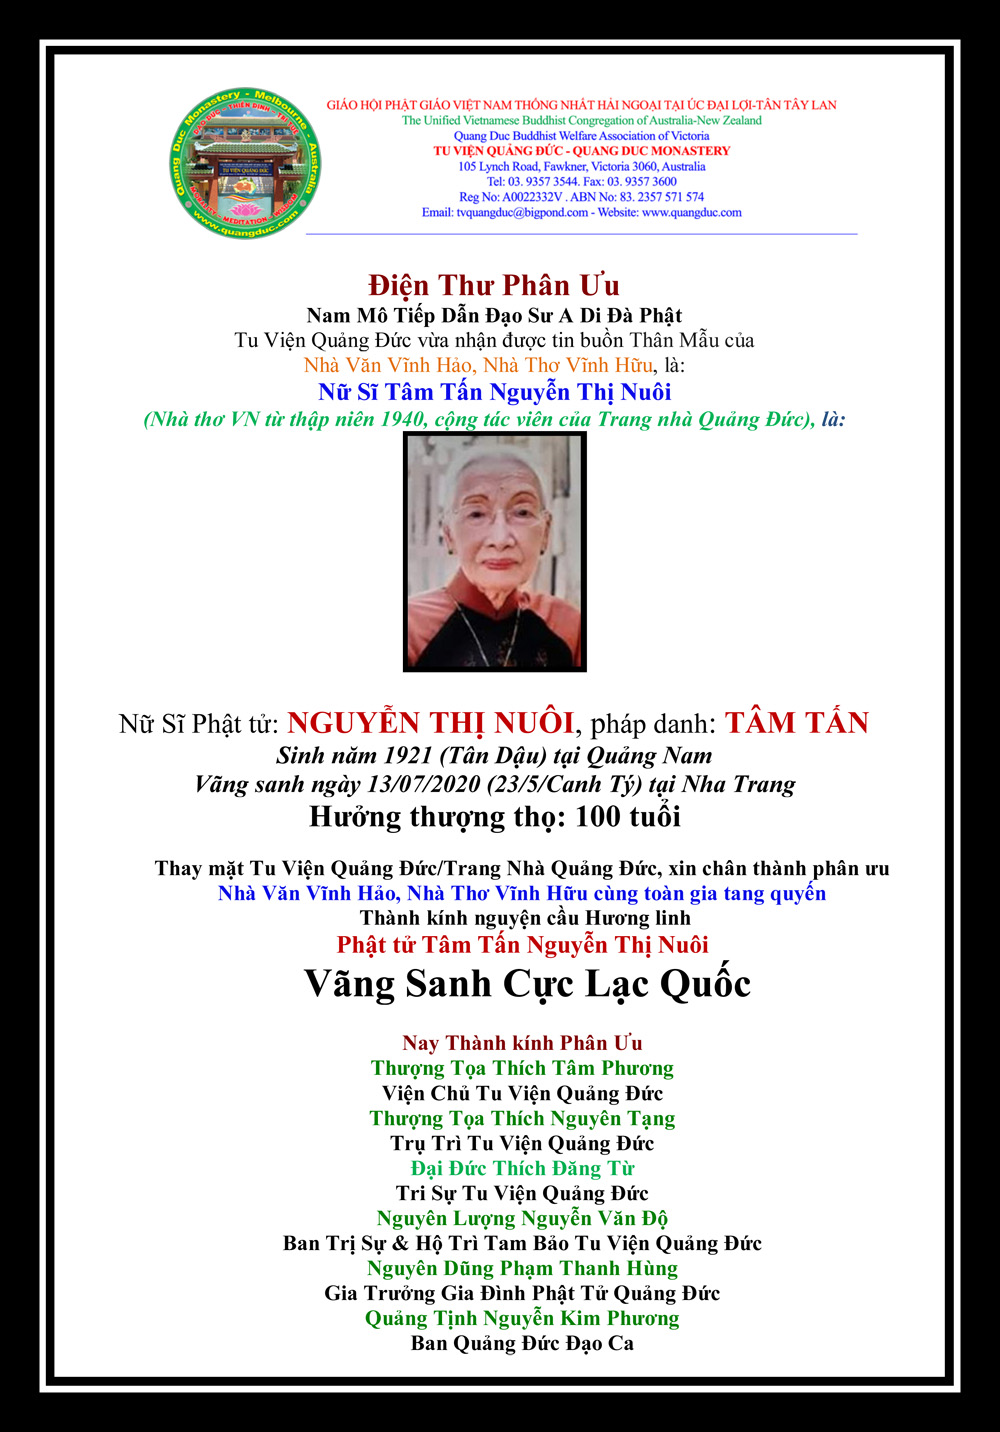 Dien Thu Phan Uu_Gia Dinh Nha Van Vinh Hao-2